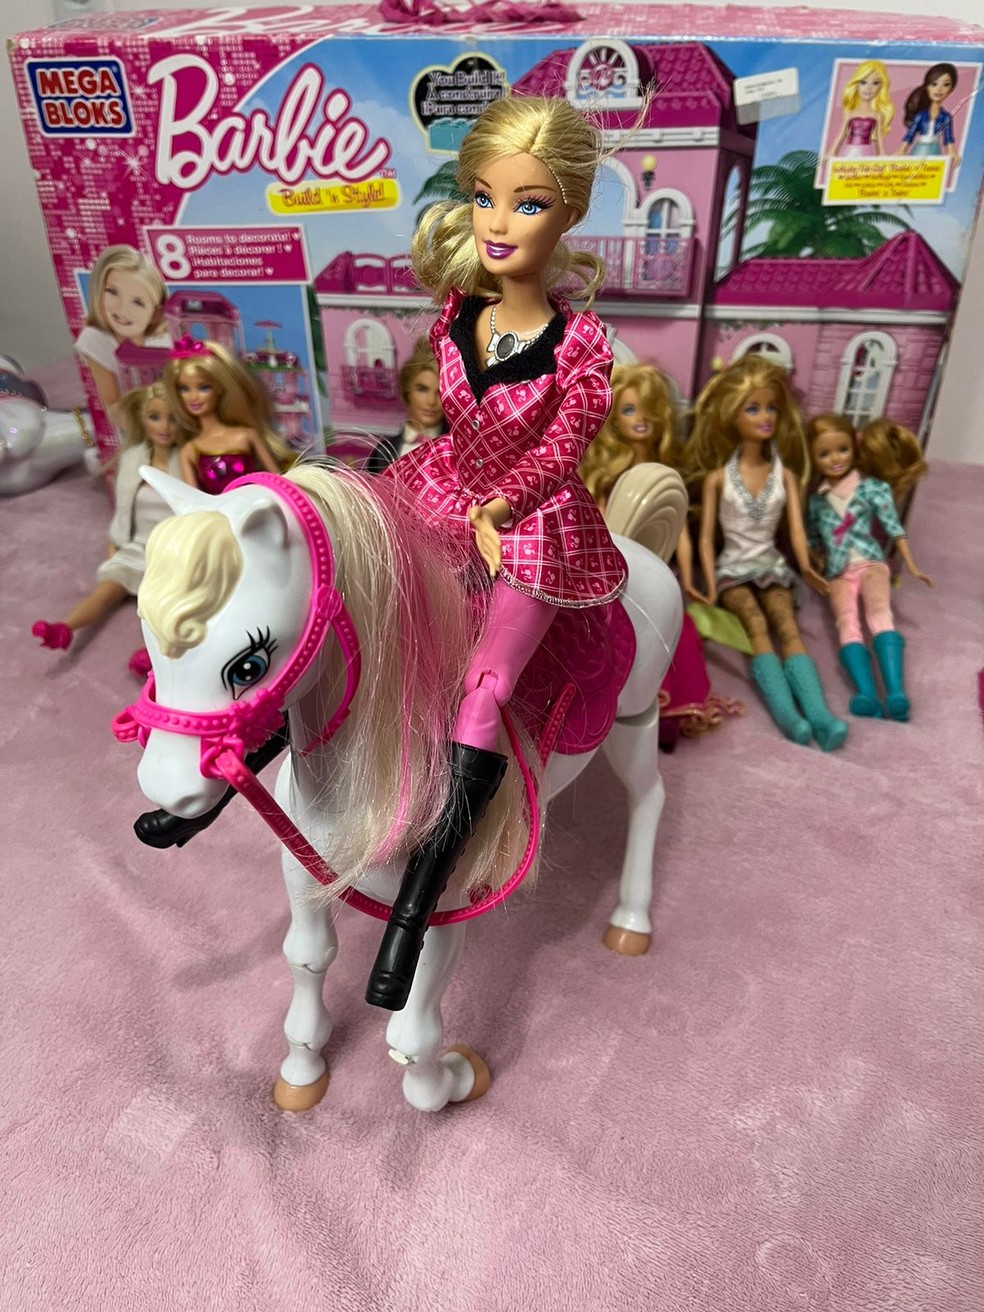 Boneca Barbie Com Cenário E Guarda Roupa De Luxo - Mattel em